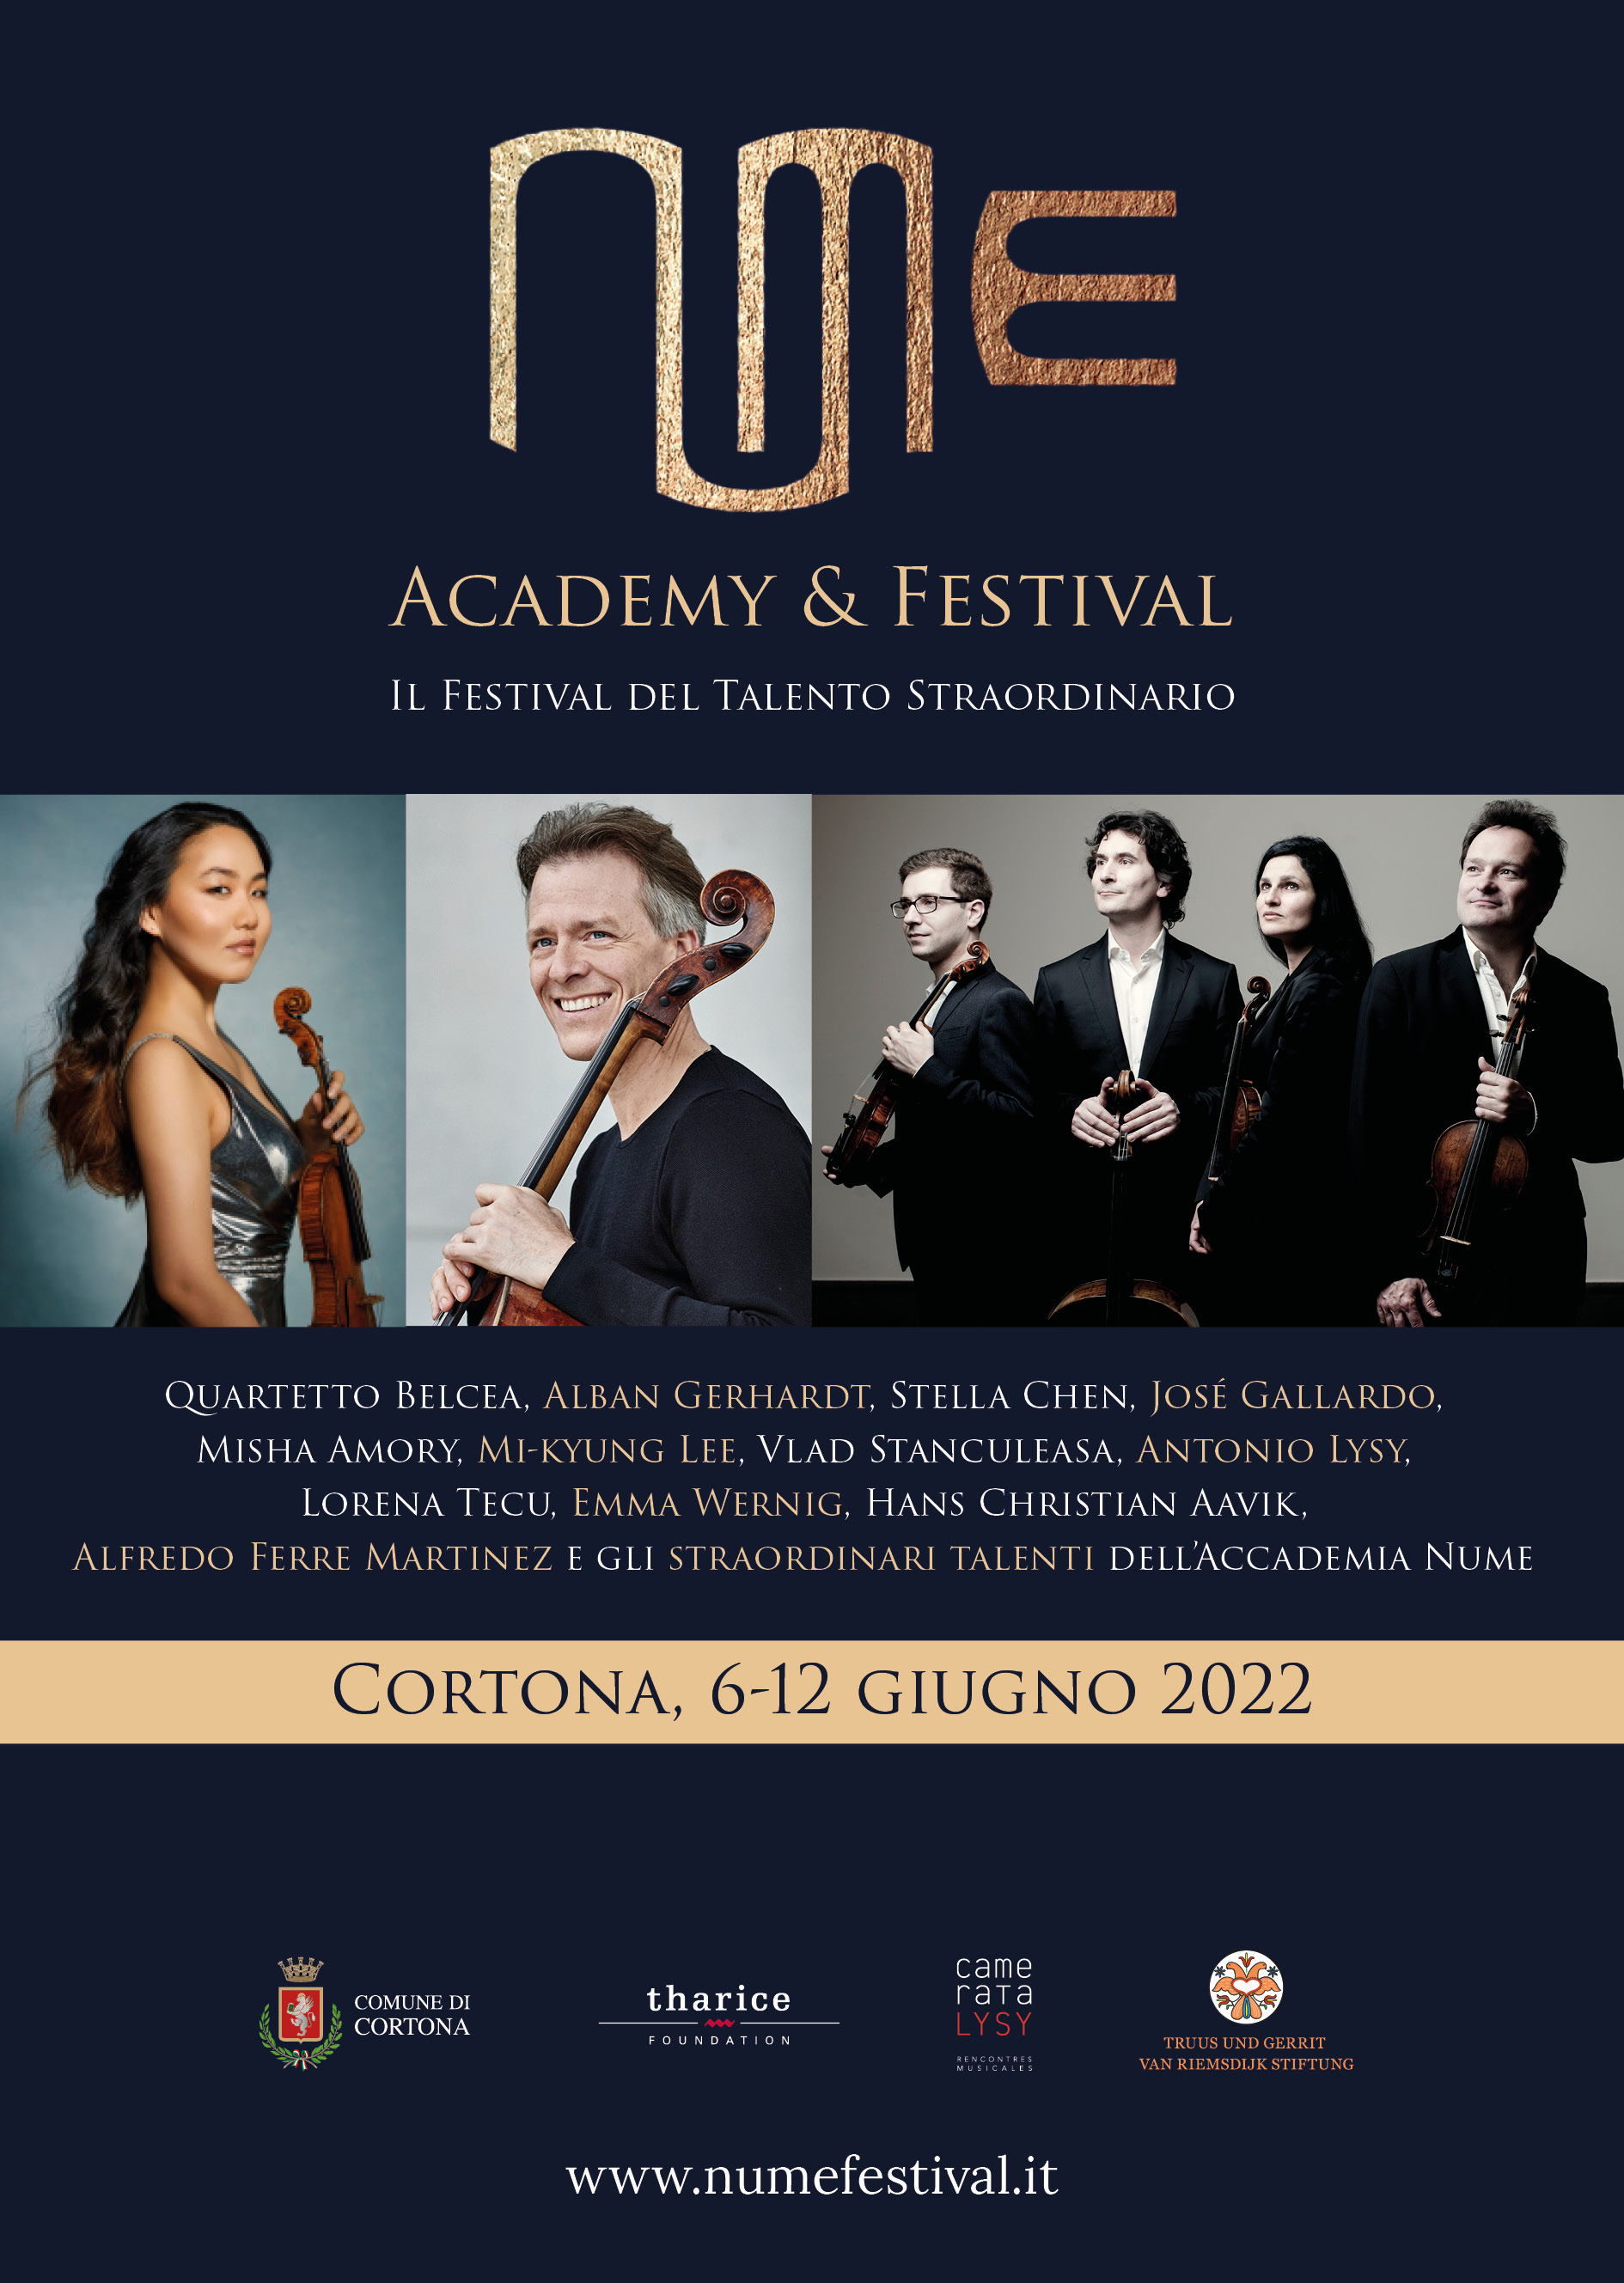 L'eccellenza della musica classica sbarca a Cortona: dall'8 al 12 giugno ecco il Nume Festival